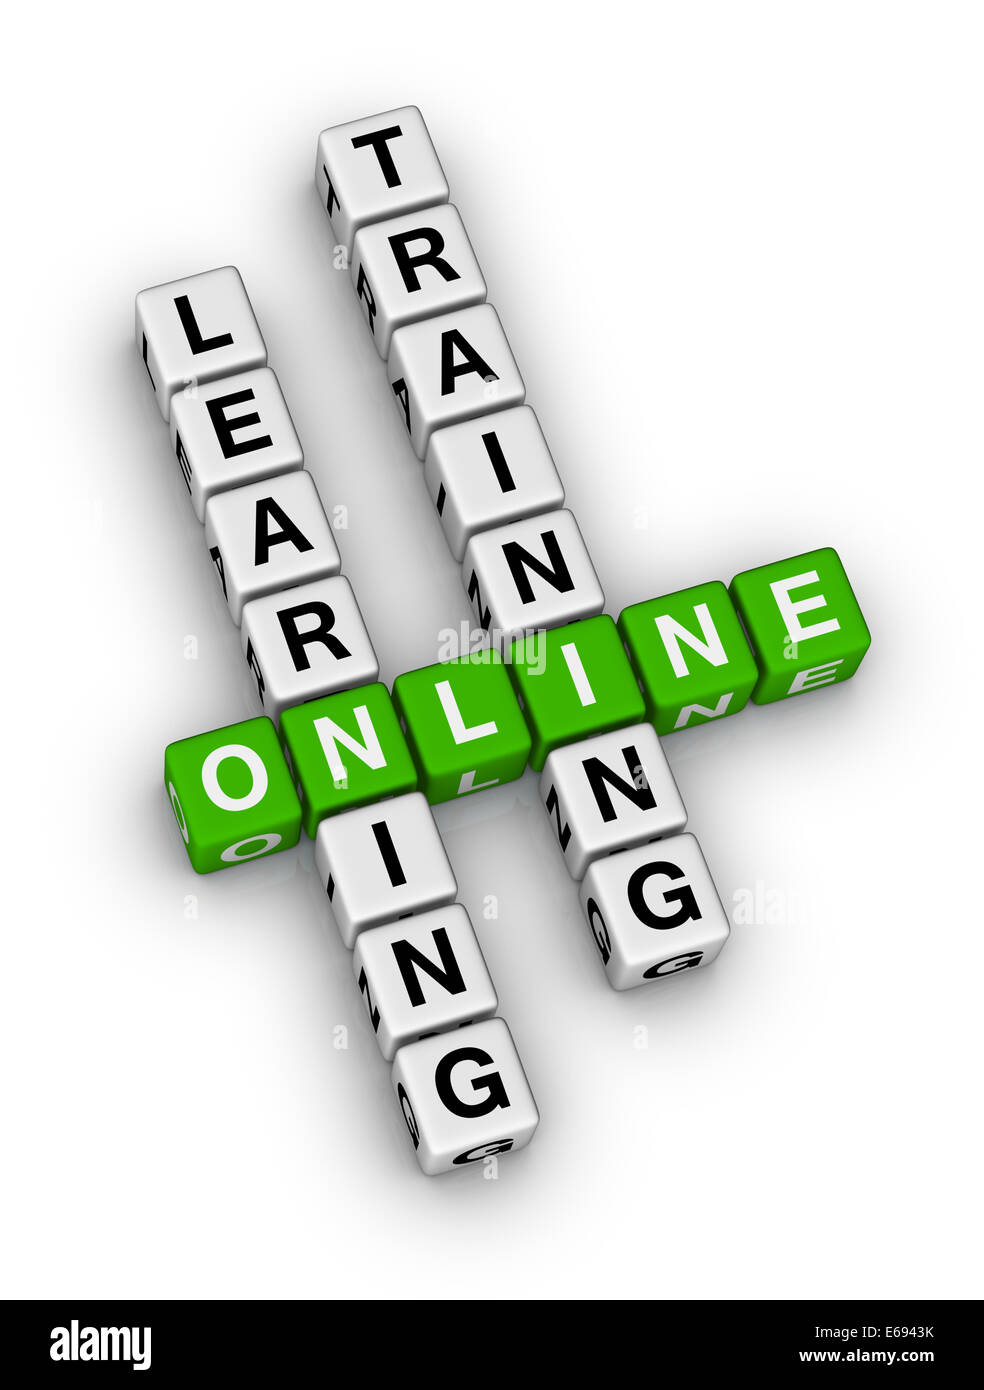 L'apprentissage et de formation en ligne de mots croisés Banque D'Images